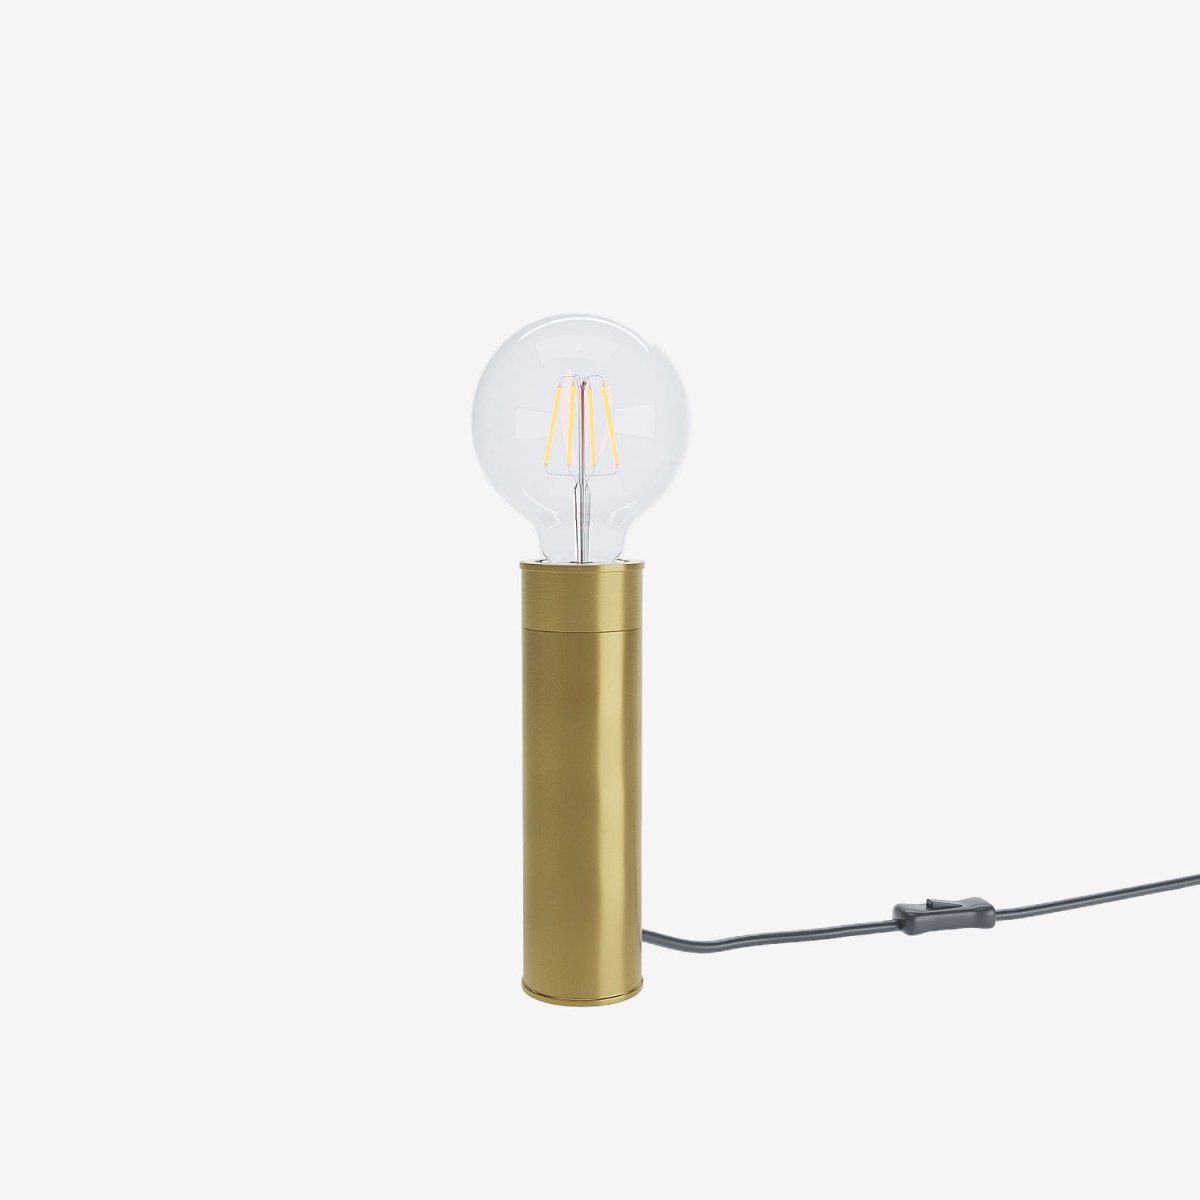 Lampe tube en métal couleur doré - Potiron Paris, luminaire design de la décoration d'intérieur chic et moderne